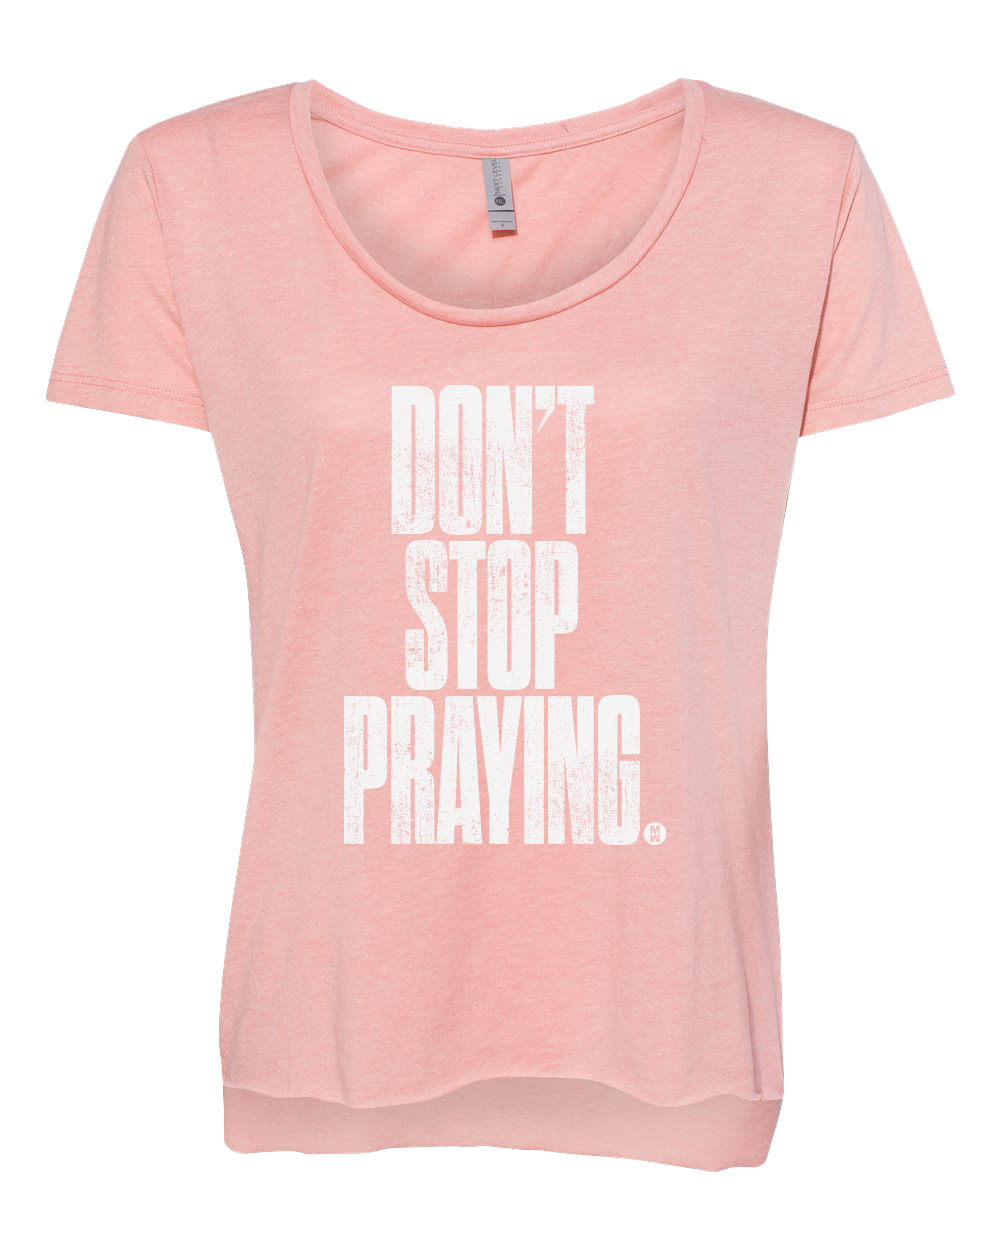 Don't Stop Praying Women's T-Shirt